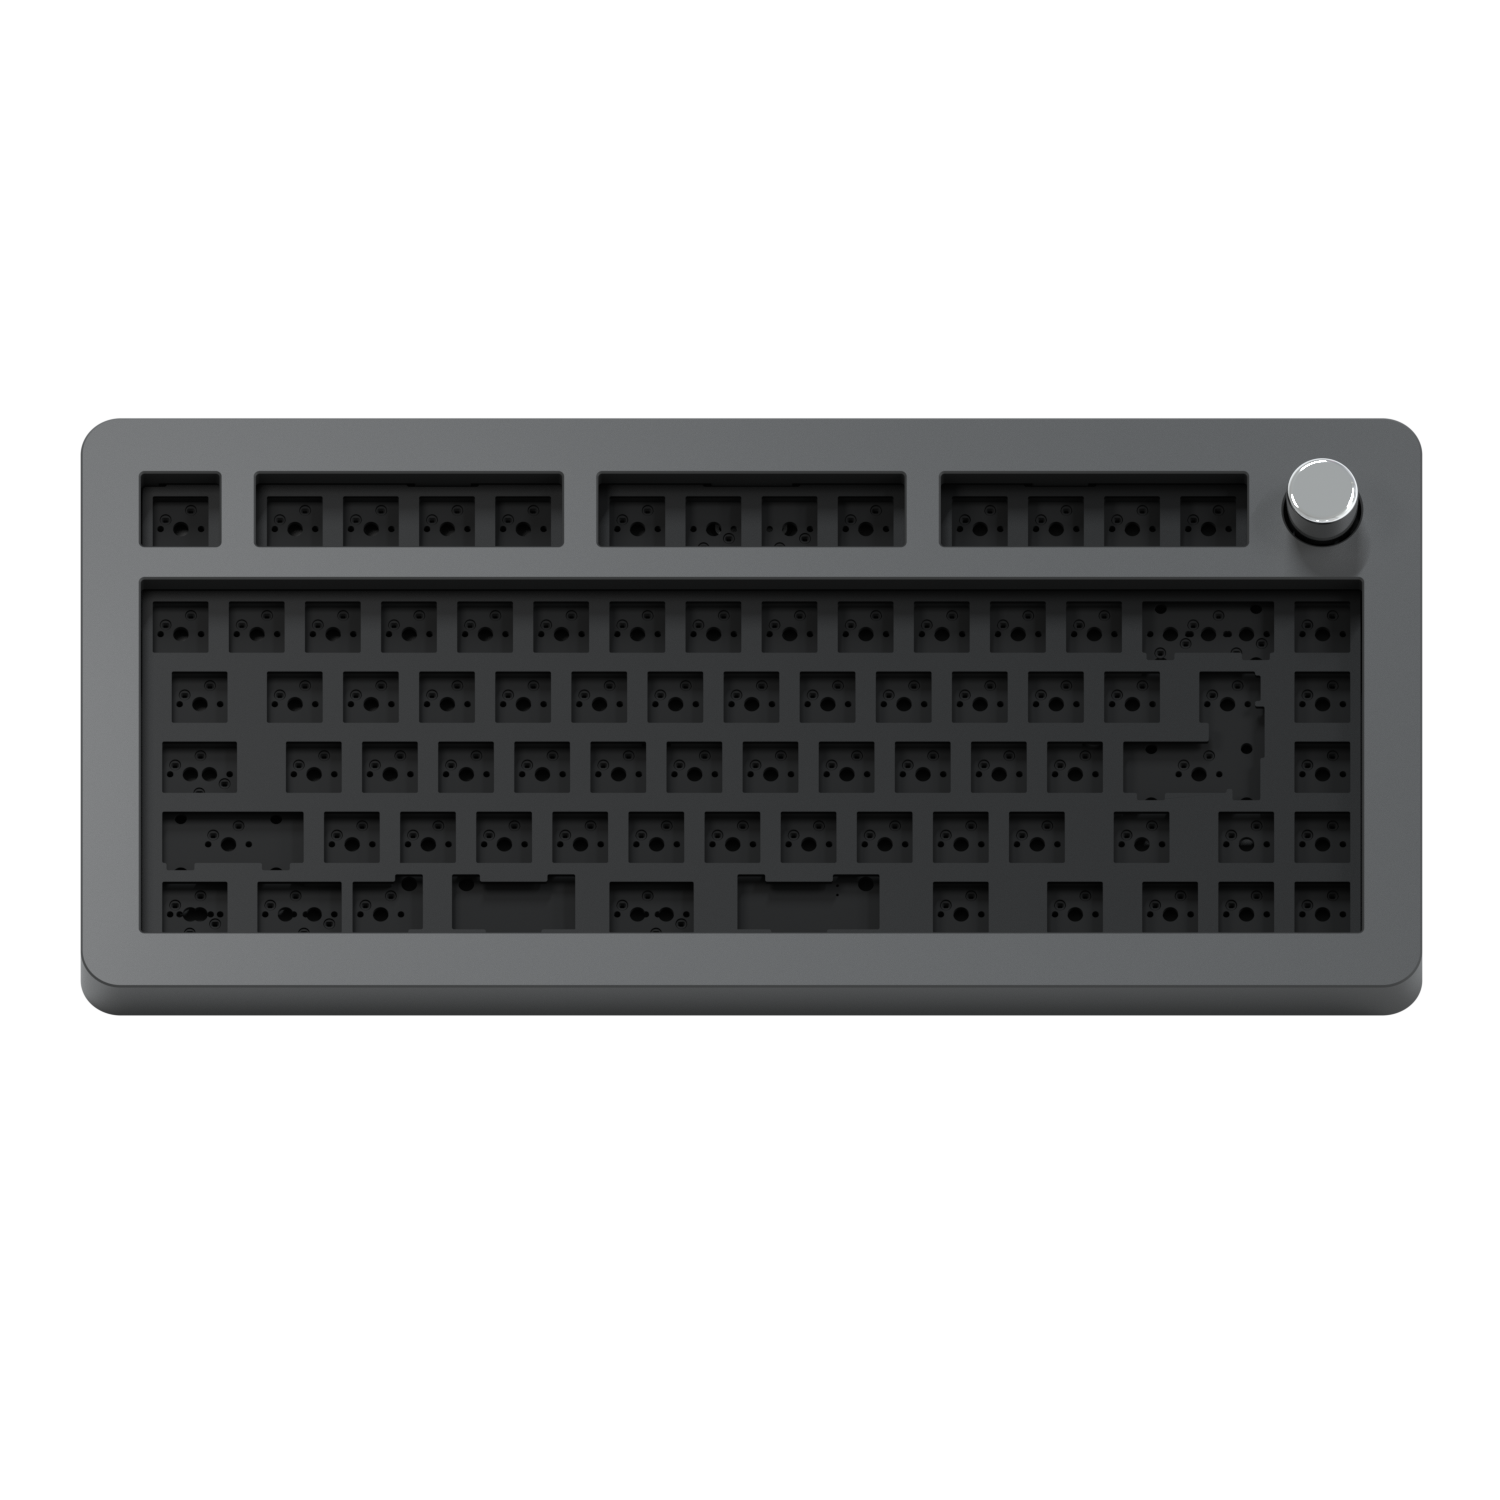 Paragon Keyboard Kit